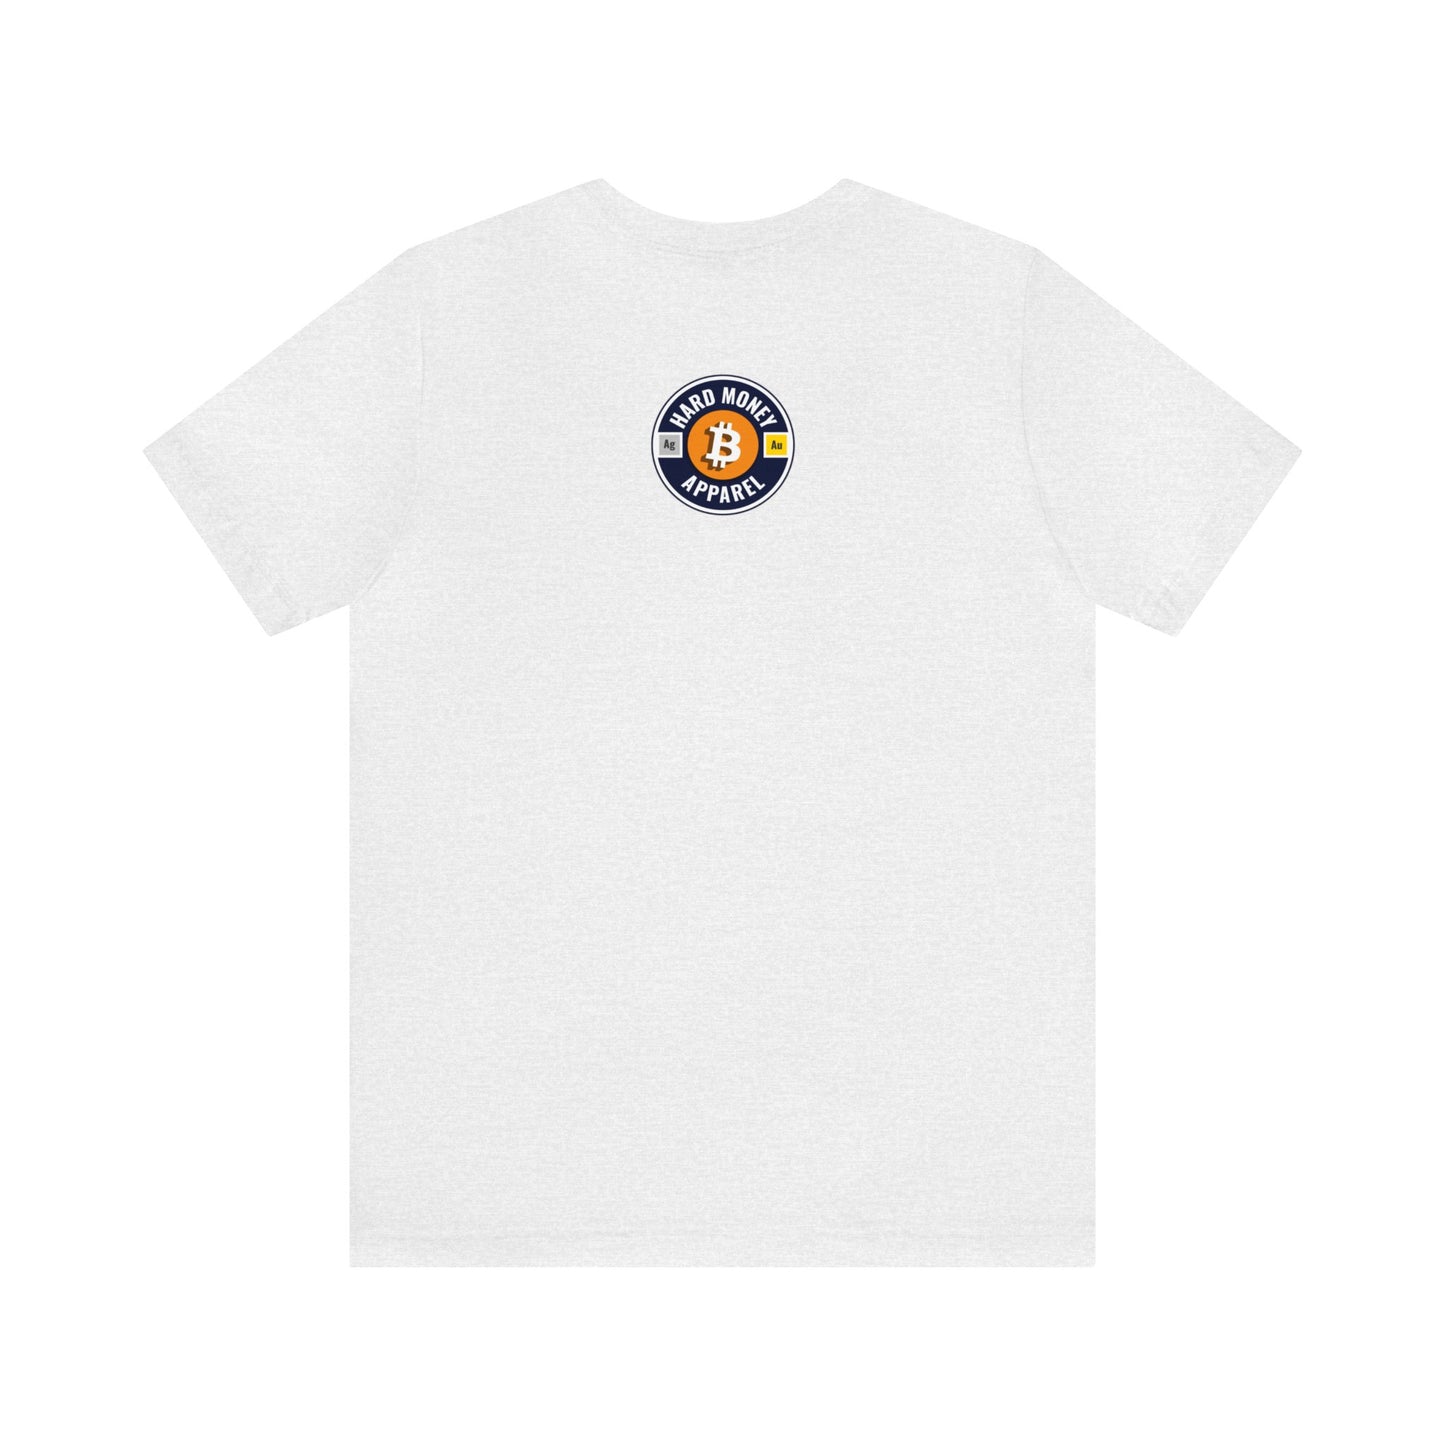 50 Sats - Unisex T-Shirt